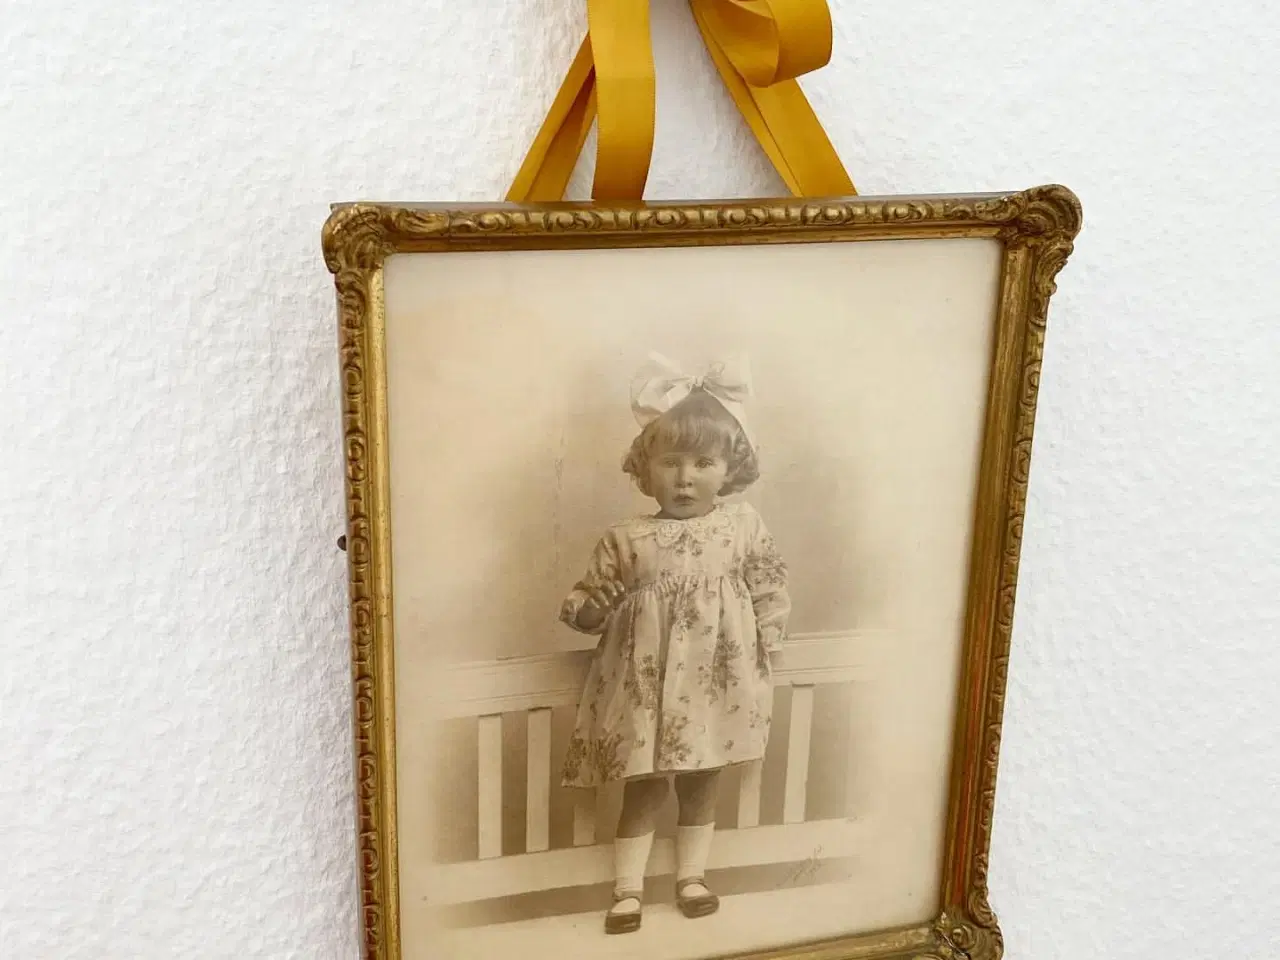 Billede 1 - Sort/hvid foto af lille pige i guldramme, dat. 1928